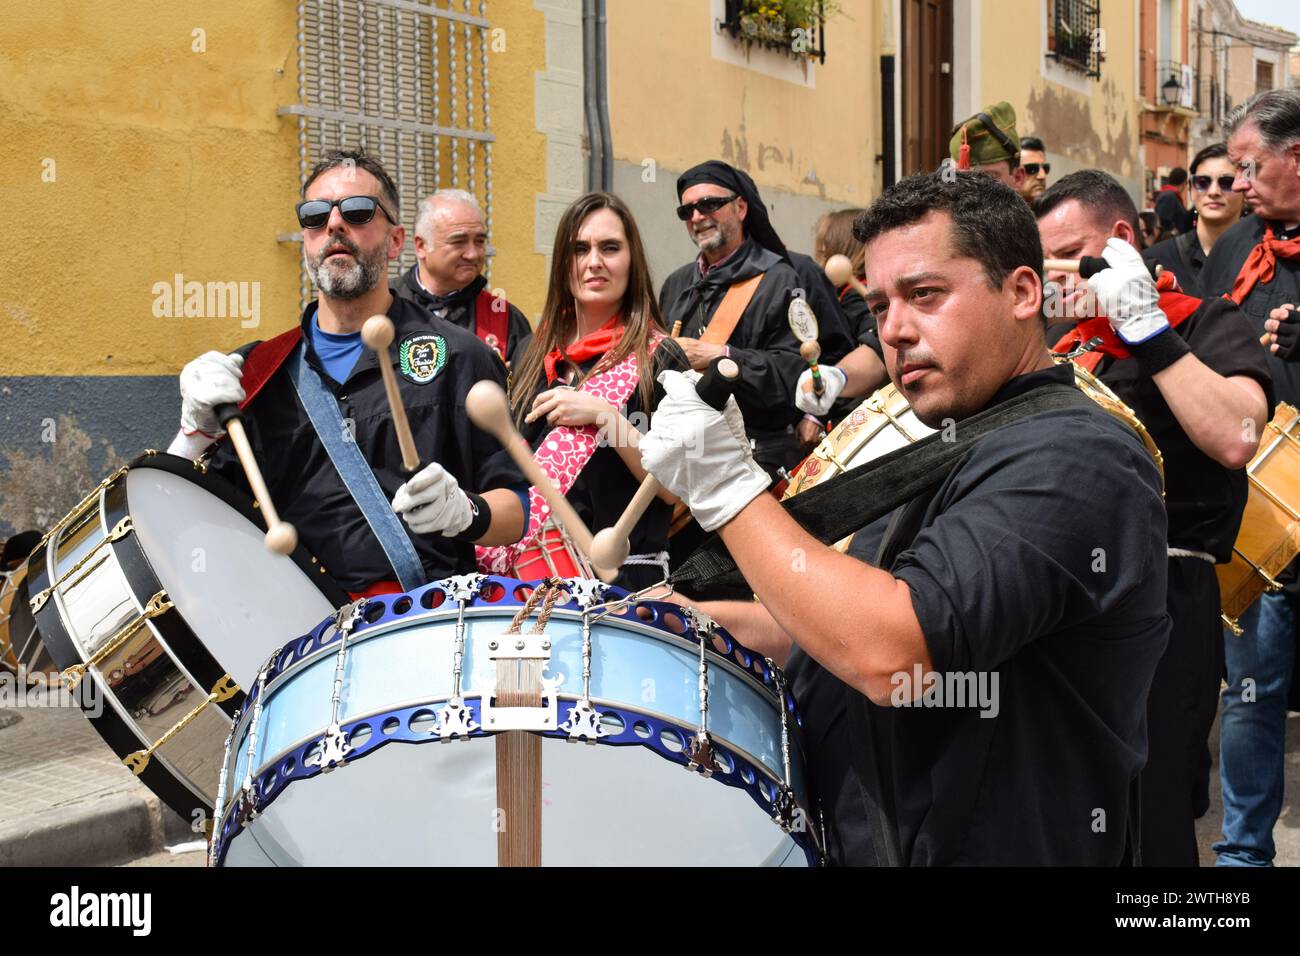 Les gens jouant de la batterie dans la rue pendant la semaine sainte Banque D'Images